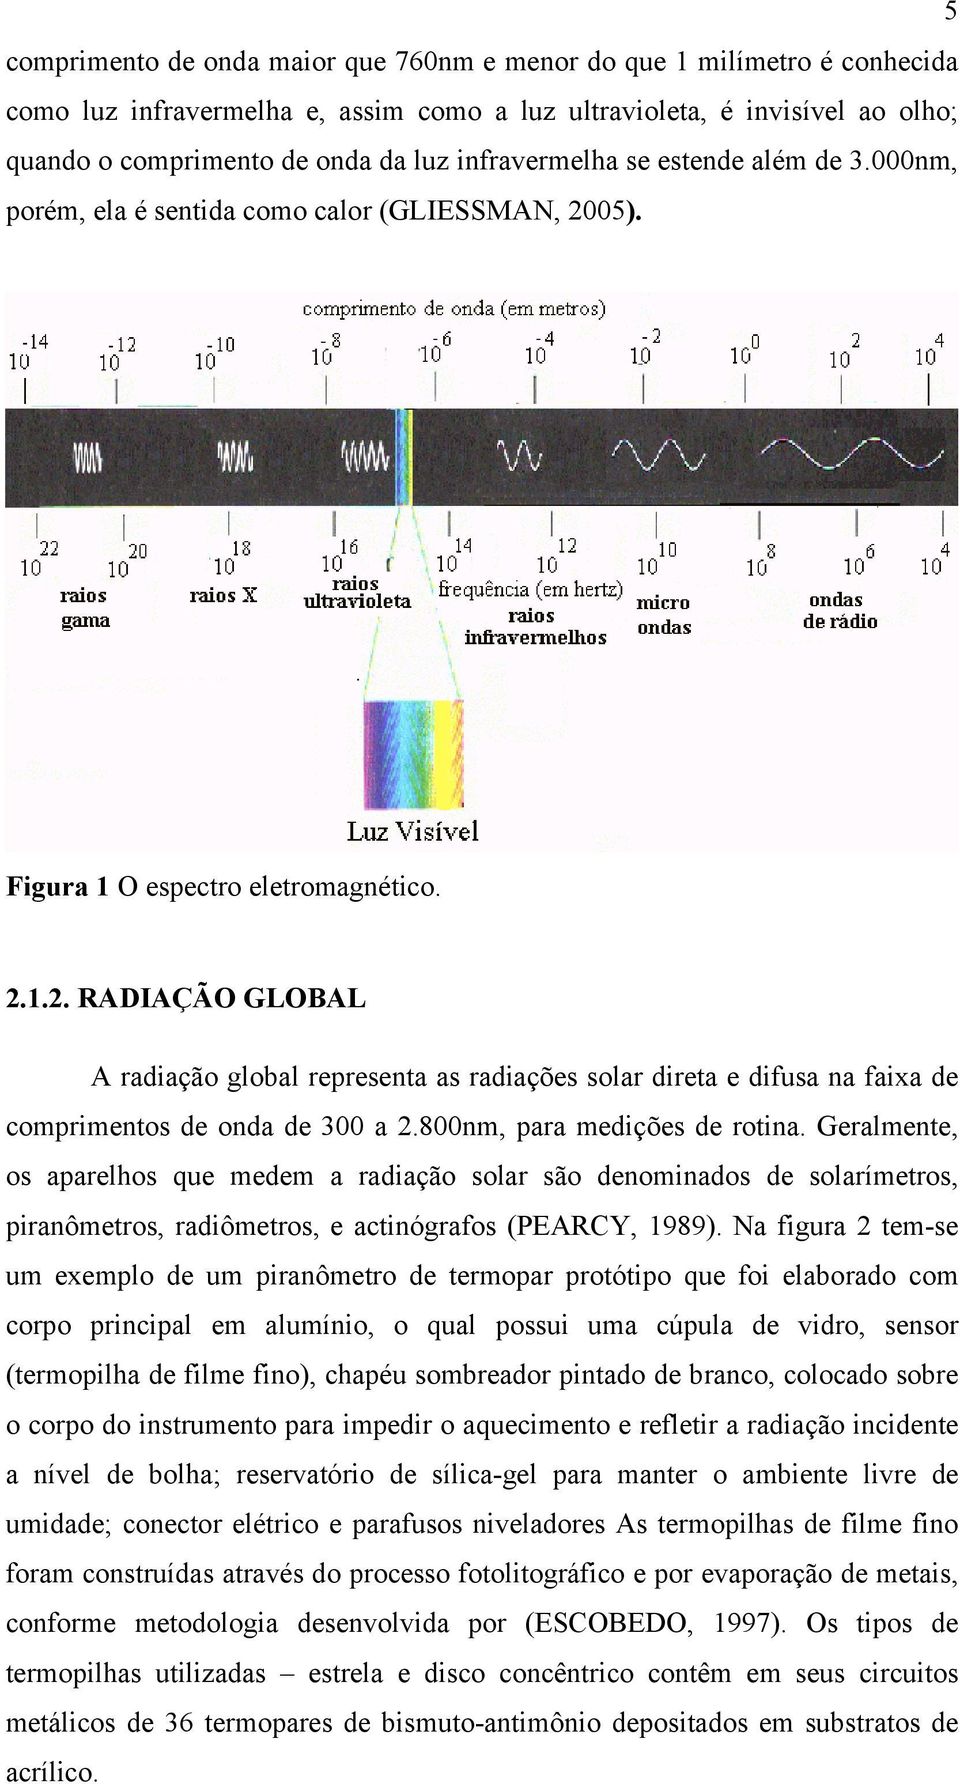 05). Figura 1 O espectro eletromagnético. 2.1.2. RADIAÇÃO GLOBAL A radiação global representa as radiações solar direta e difusa na faixa de comprimentos de onda de 300 a 2.